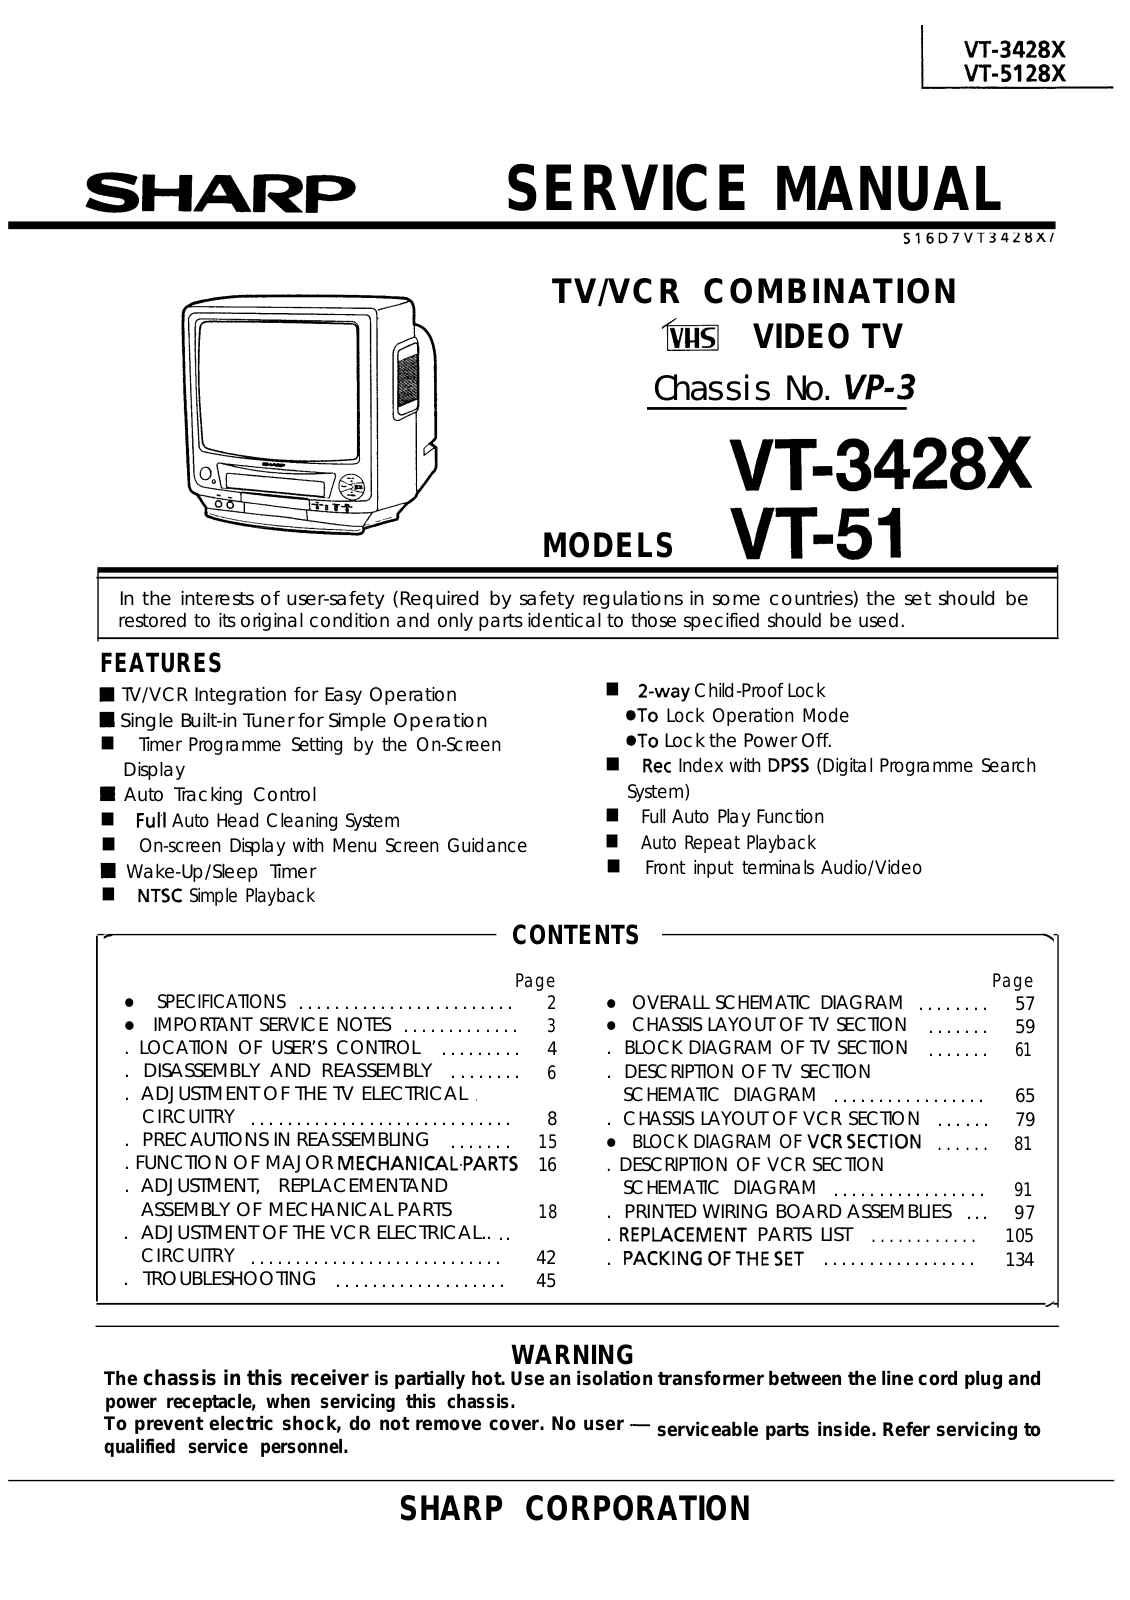 SHARP VT-3428X, VT-51 Service Manual